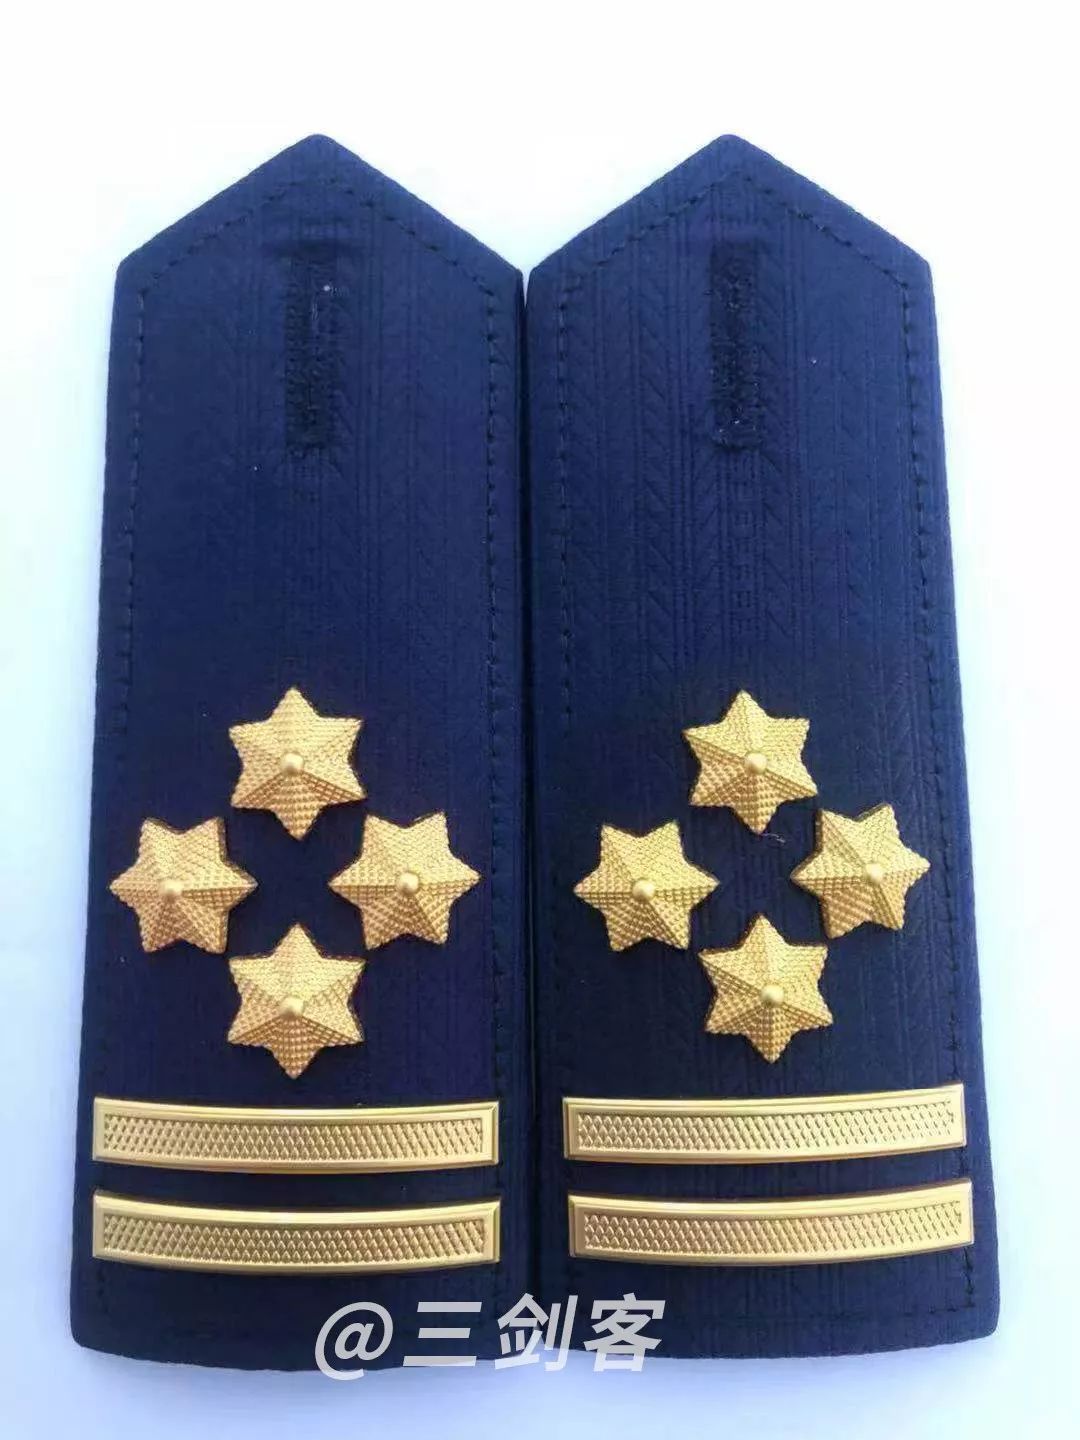 与军衔,警衔有所不同的是,总体上参照了军衔,警衔的做法,消防救援衔的